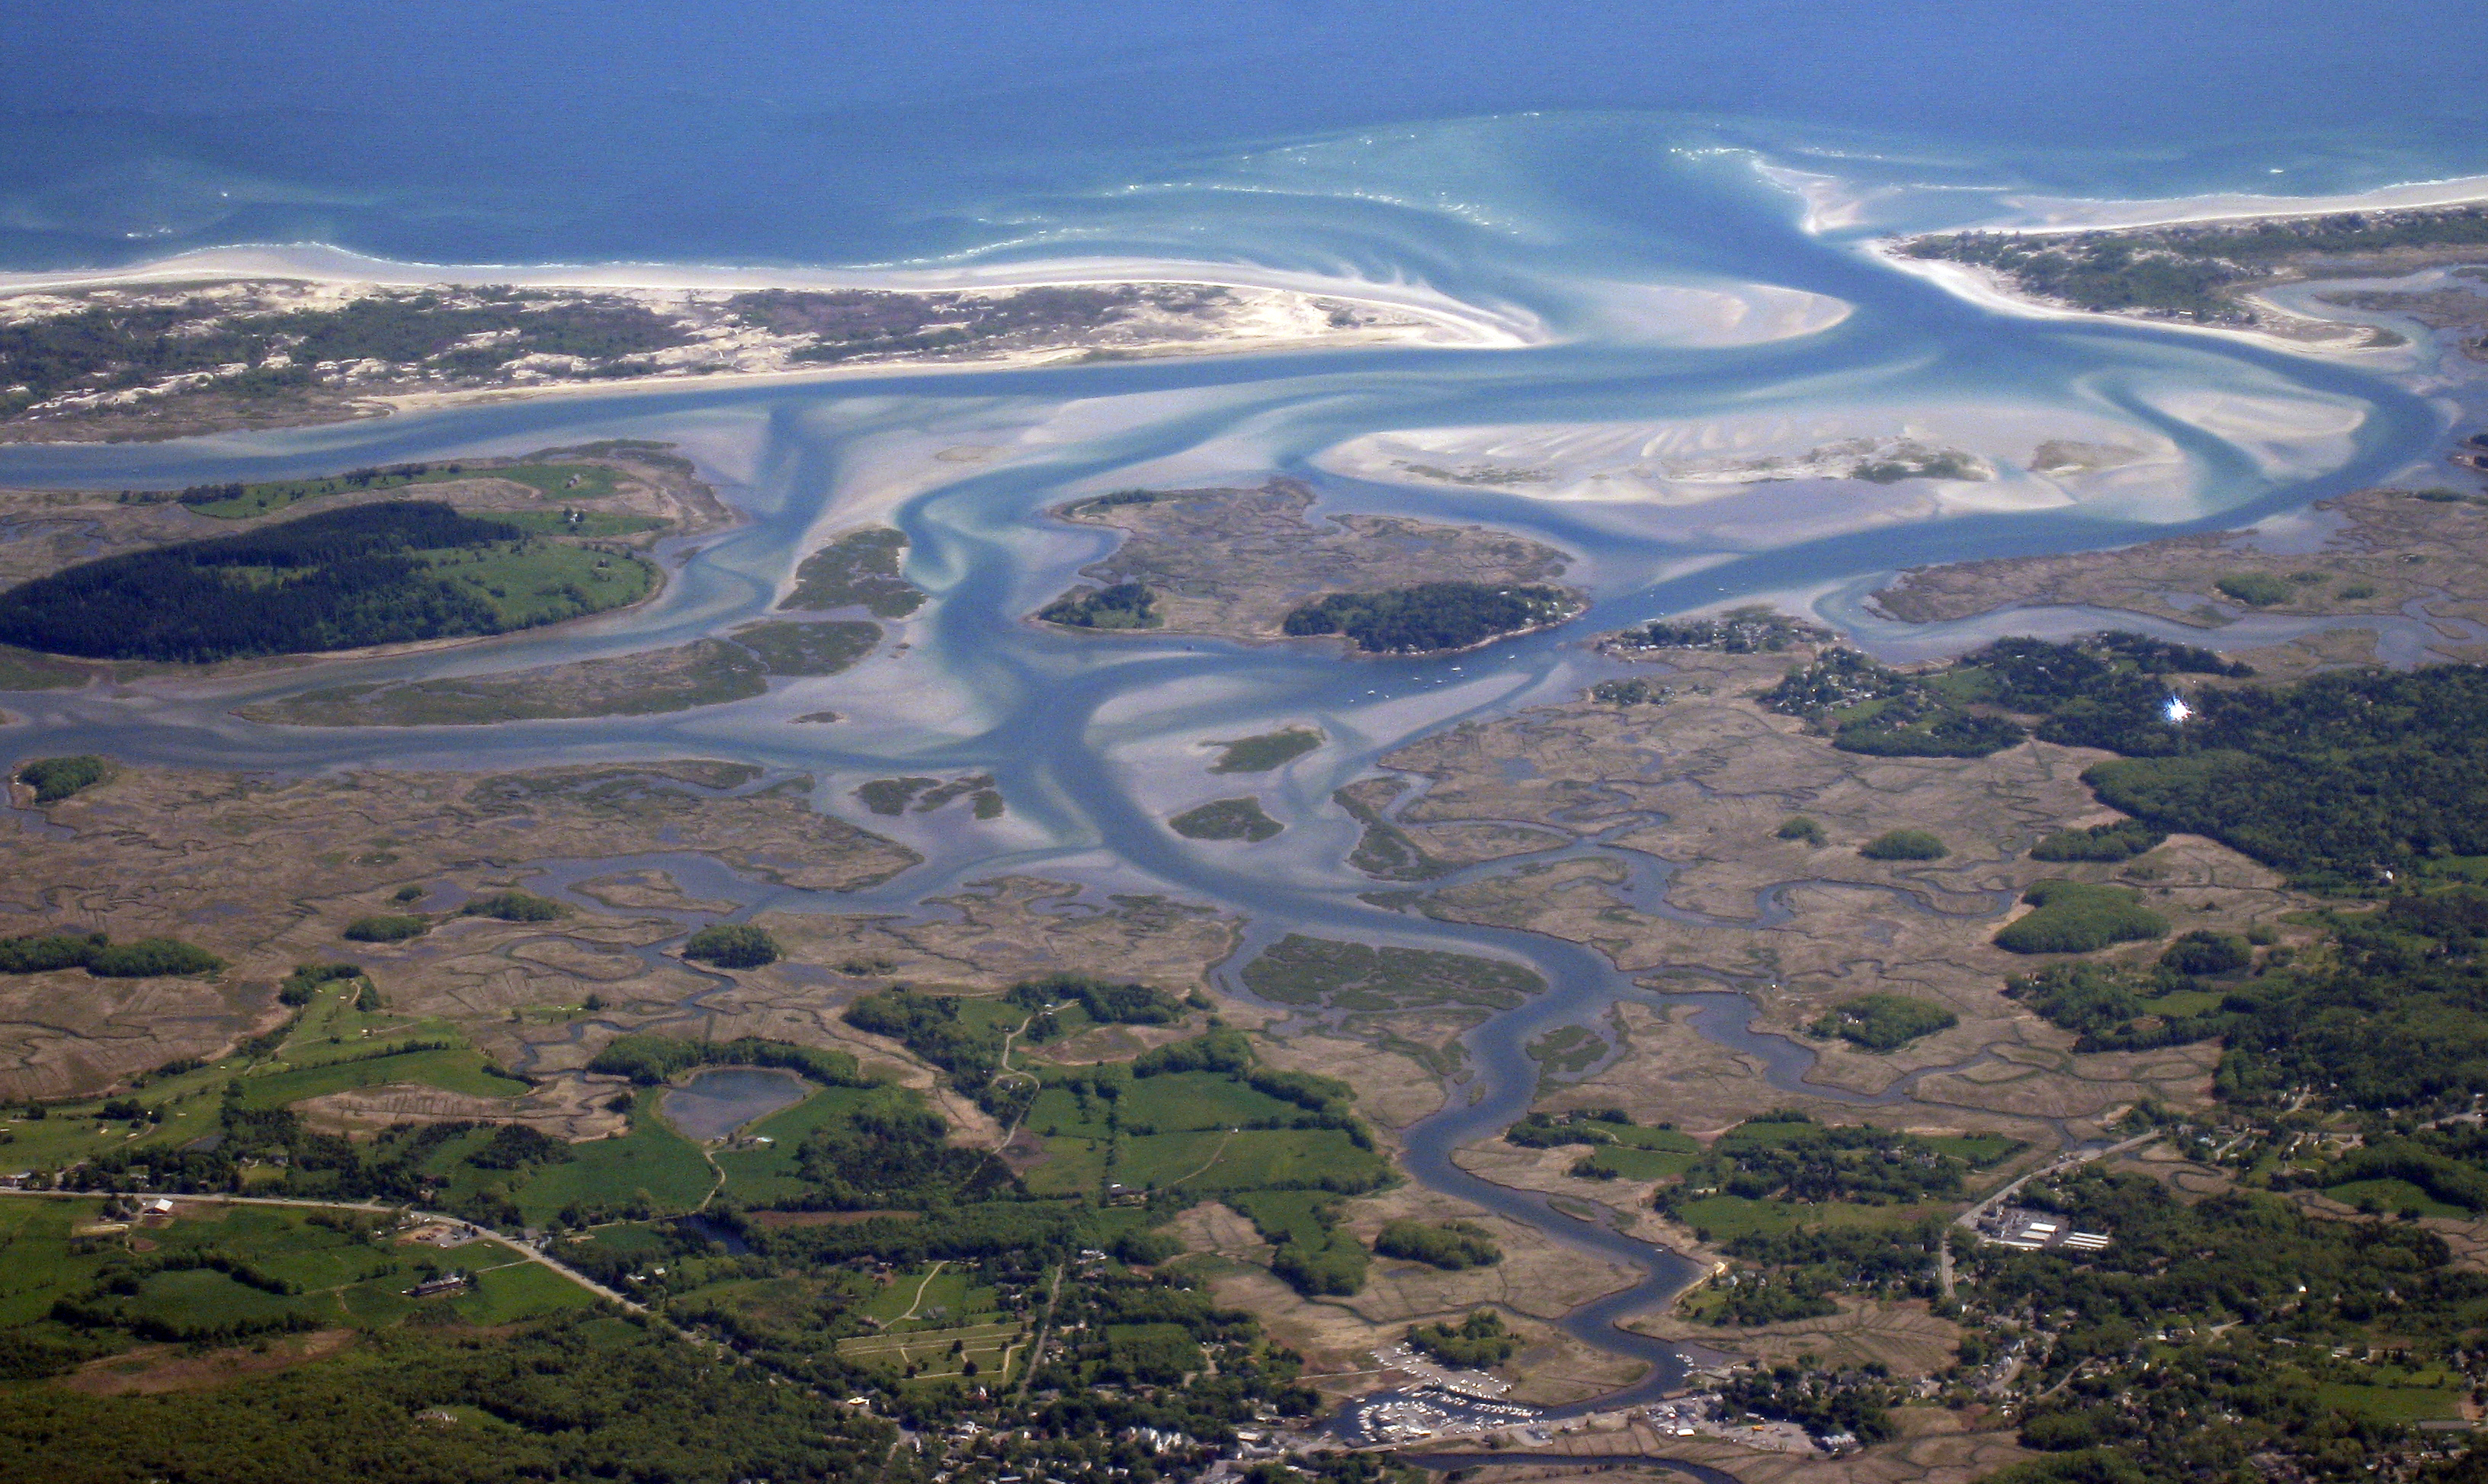 Aerial view of the great salt marsh of Massachusetts.